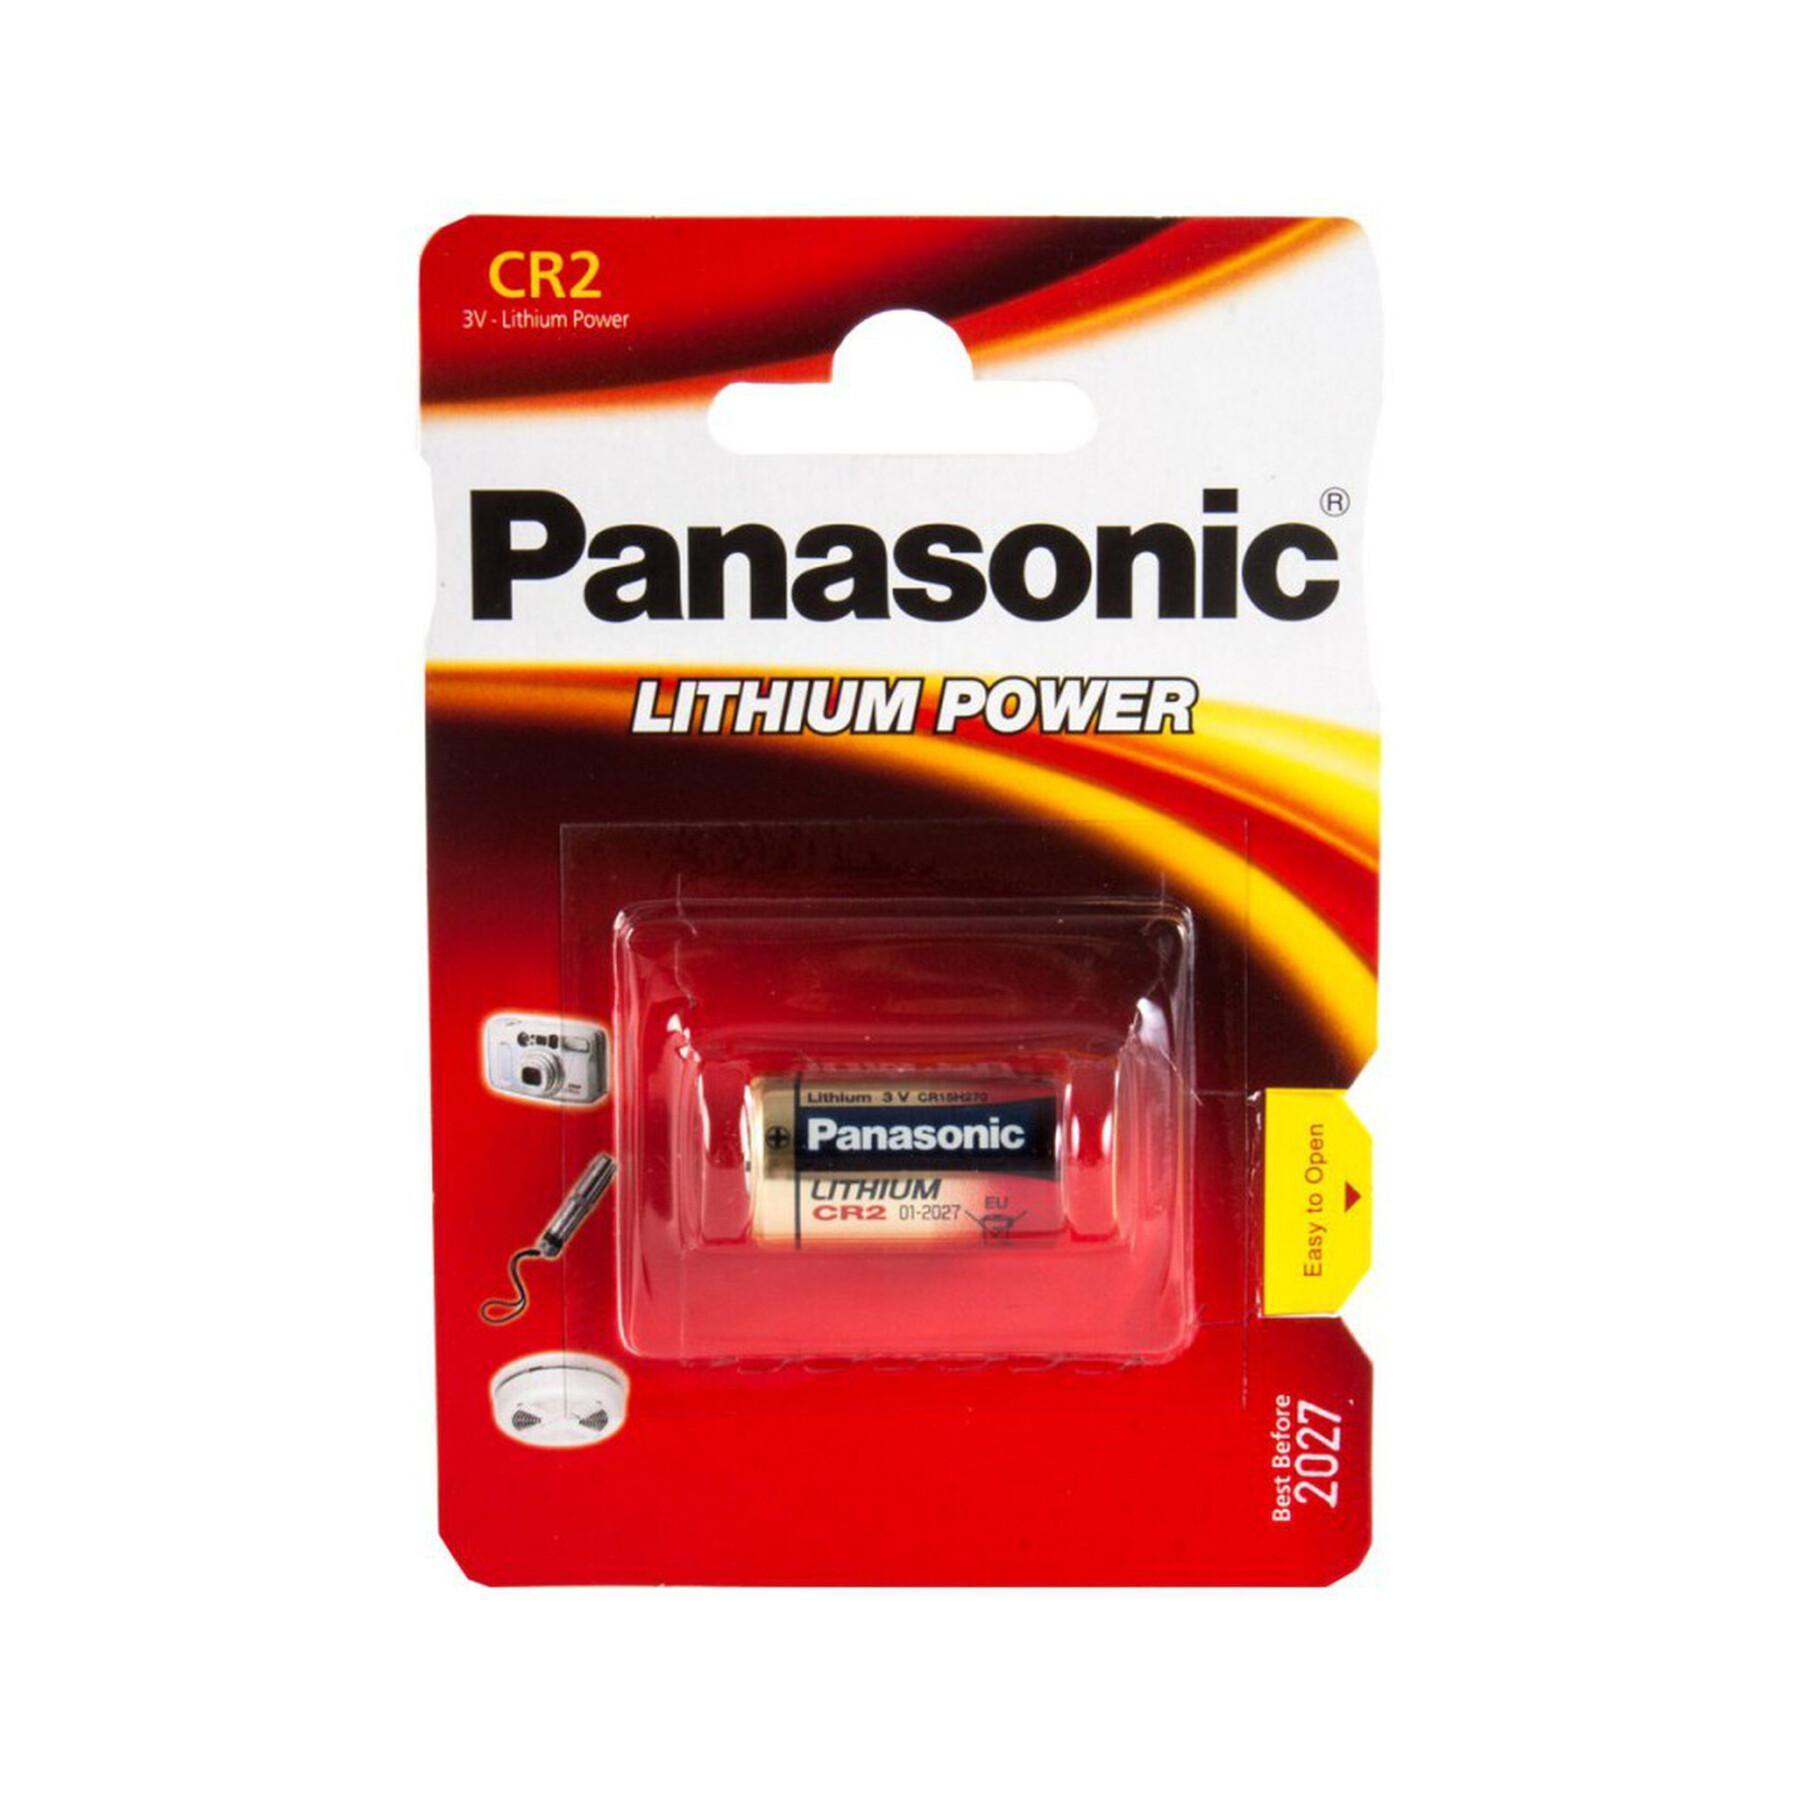 Panasonic-batteri för avståndsmätare